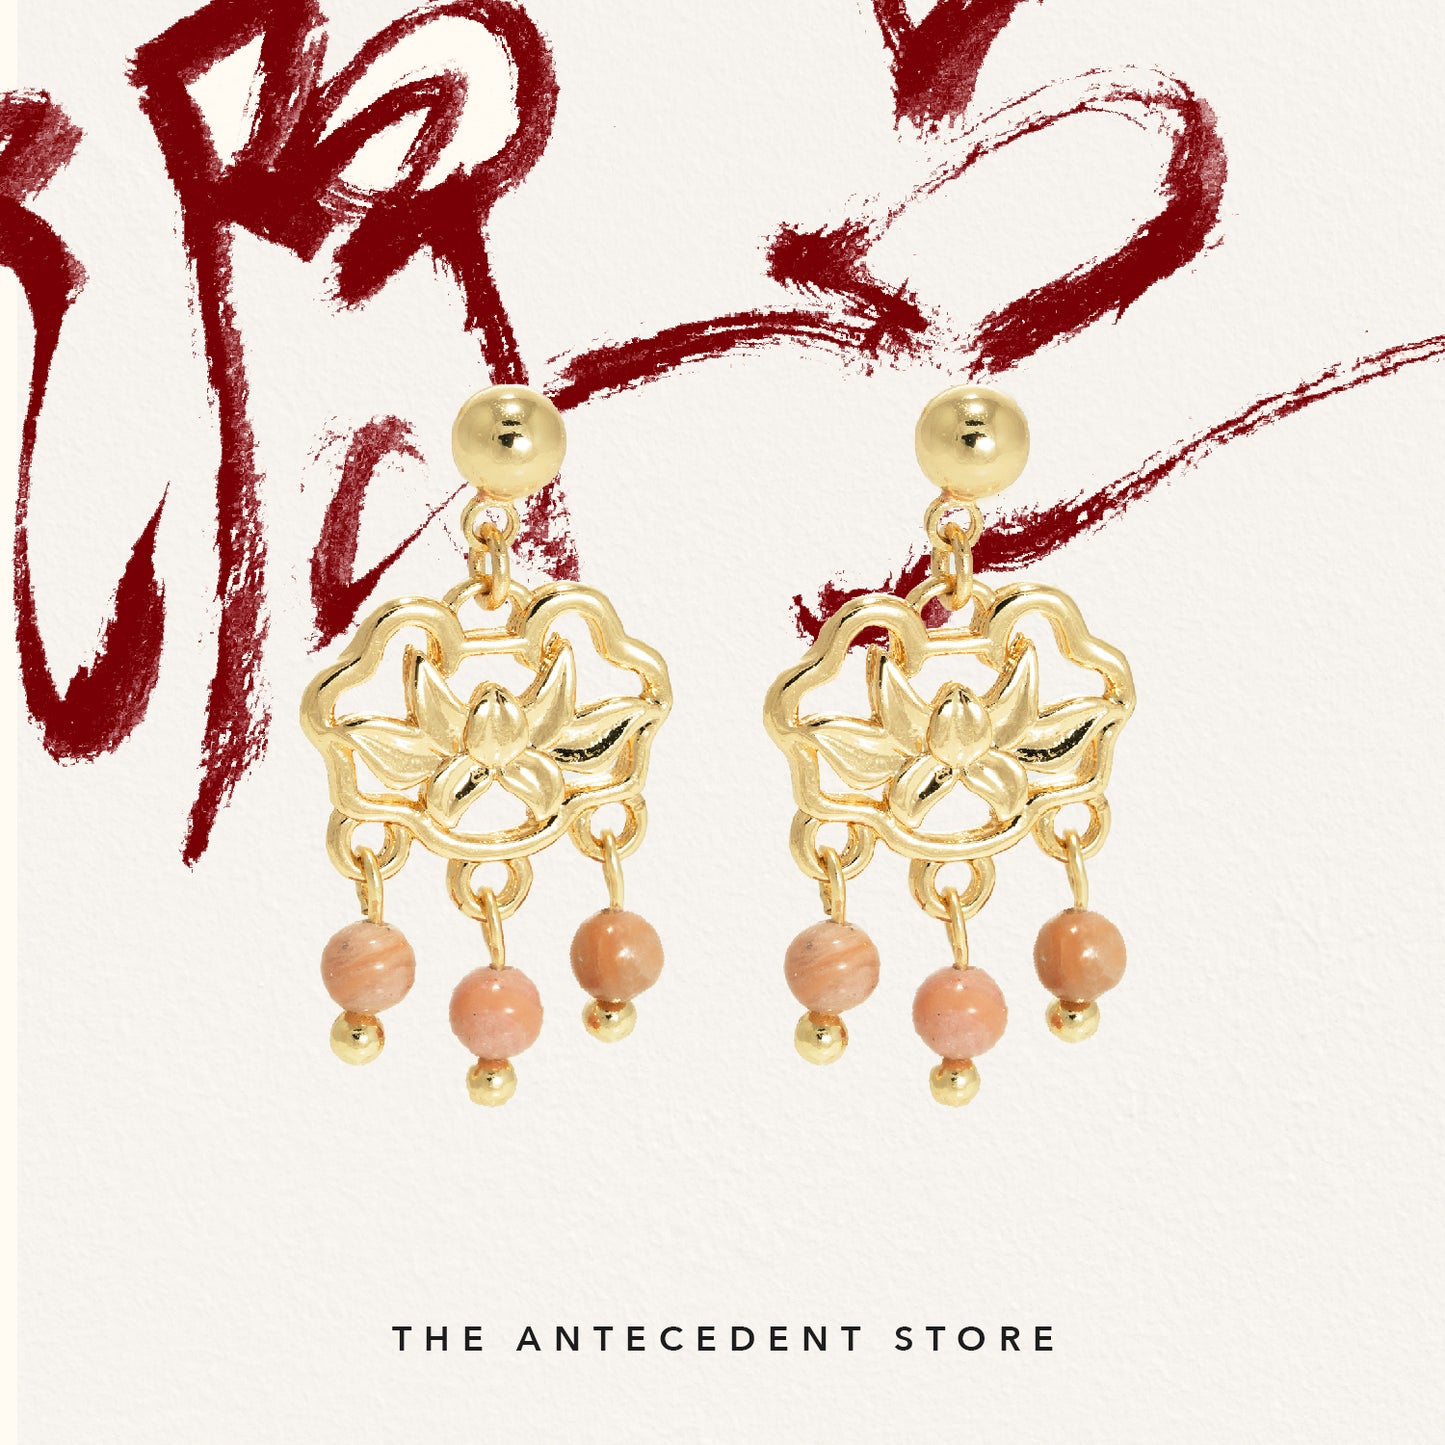 【如意锁】Longevity Lock Earrings With Pink Chalcedony - 14K Real Gold Plated Jewelry